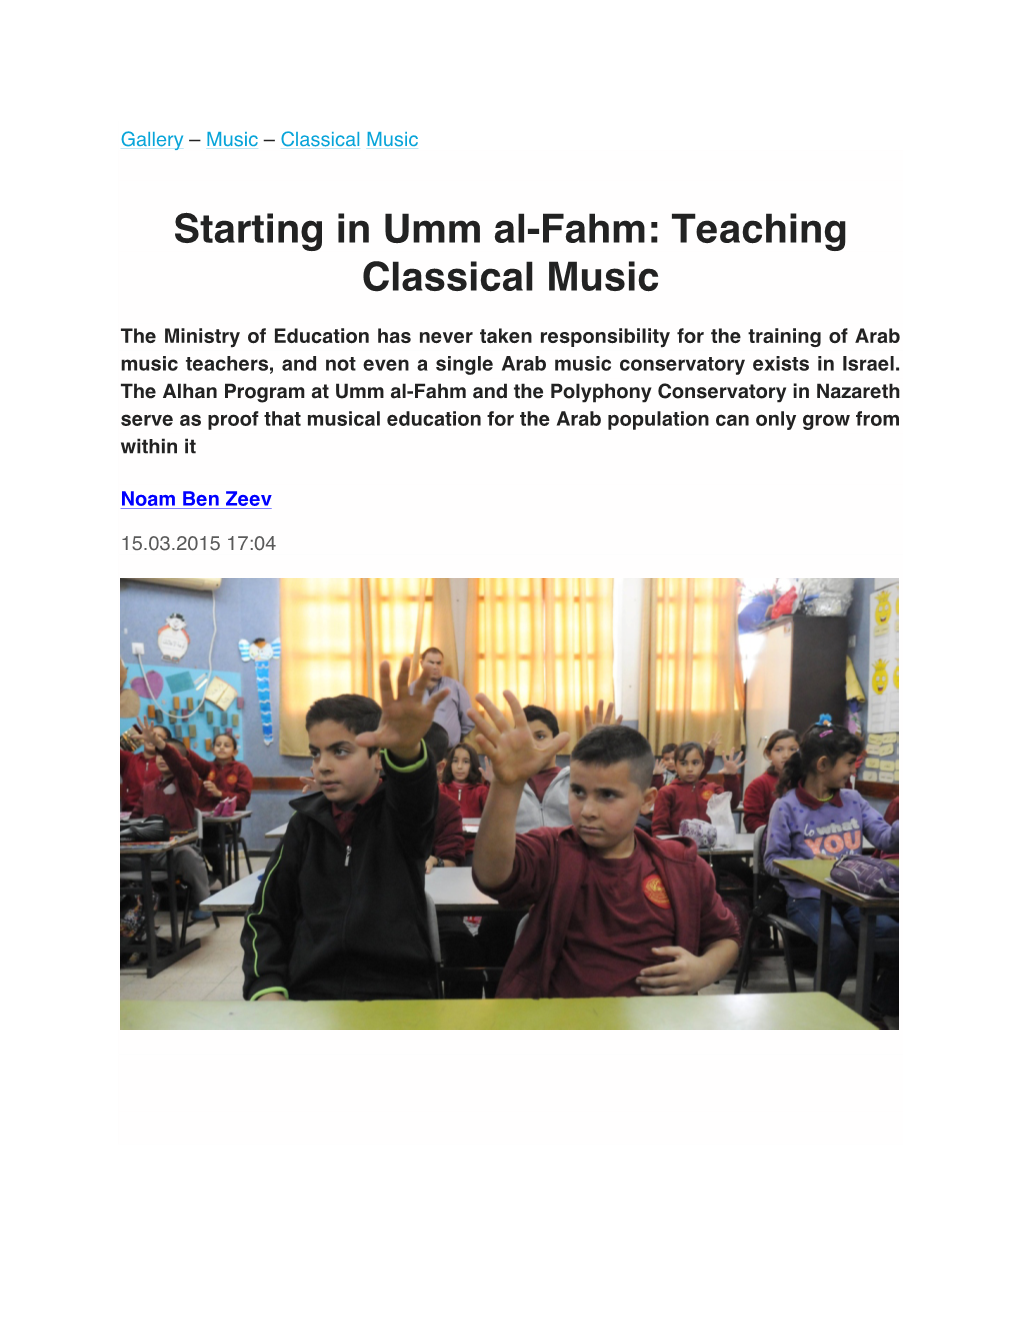 Haaretz: “Starting in Umm Al-Fahm: Teaching Classical Music